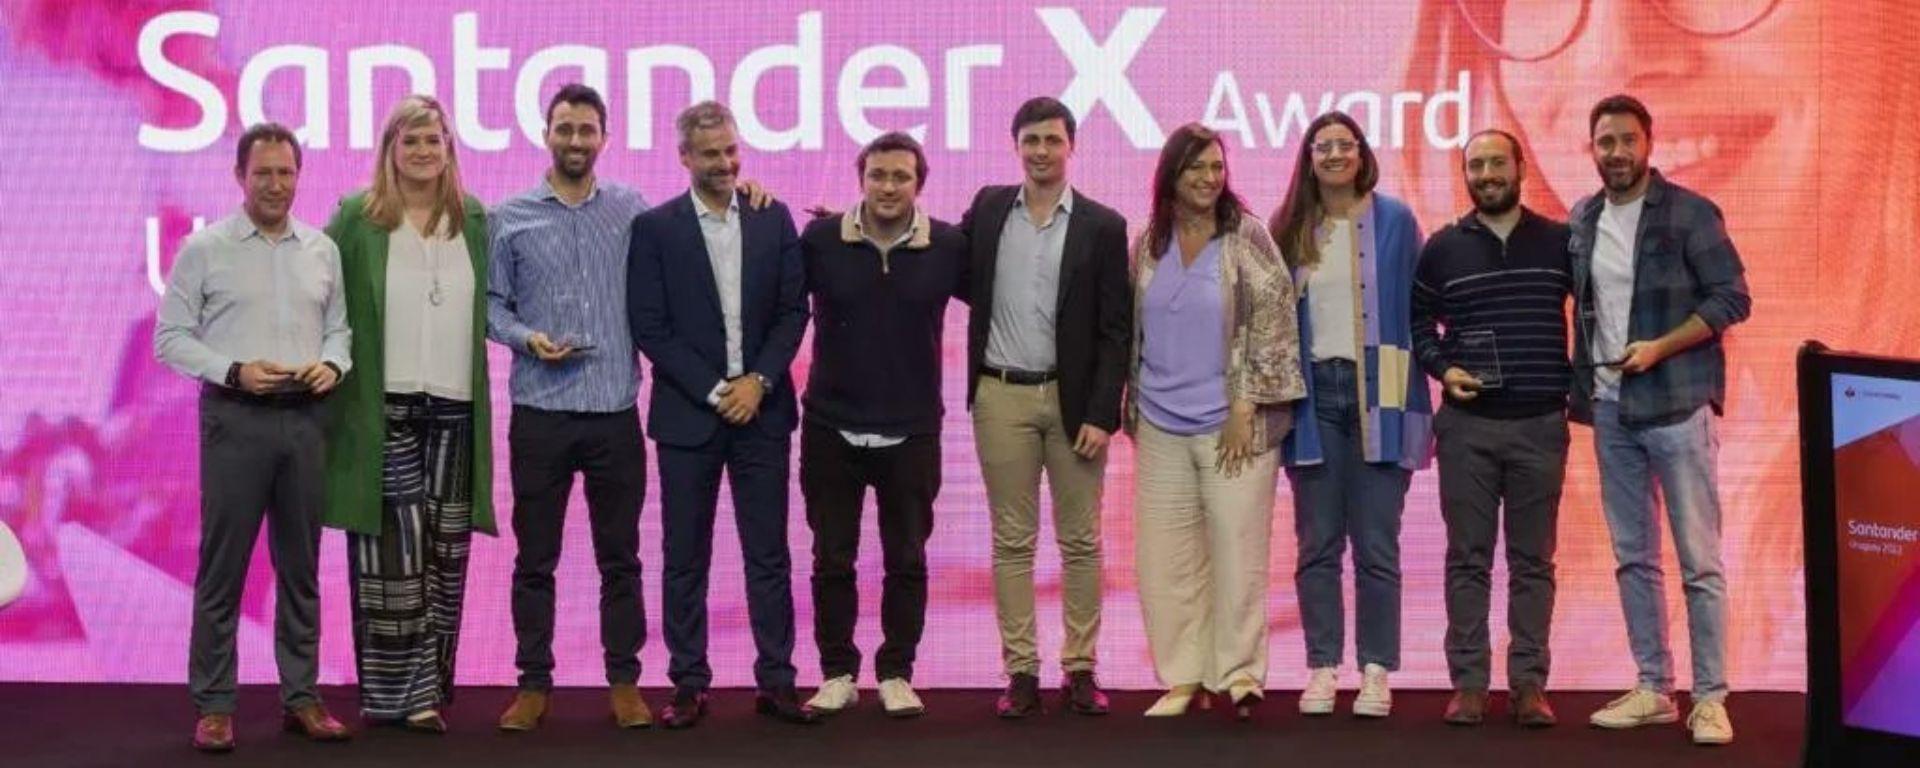 Initium presente en el Elevator Day Santander: grupo de finalistas posan con premios